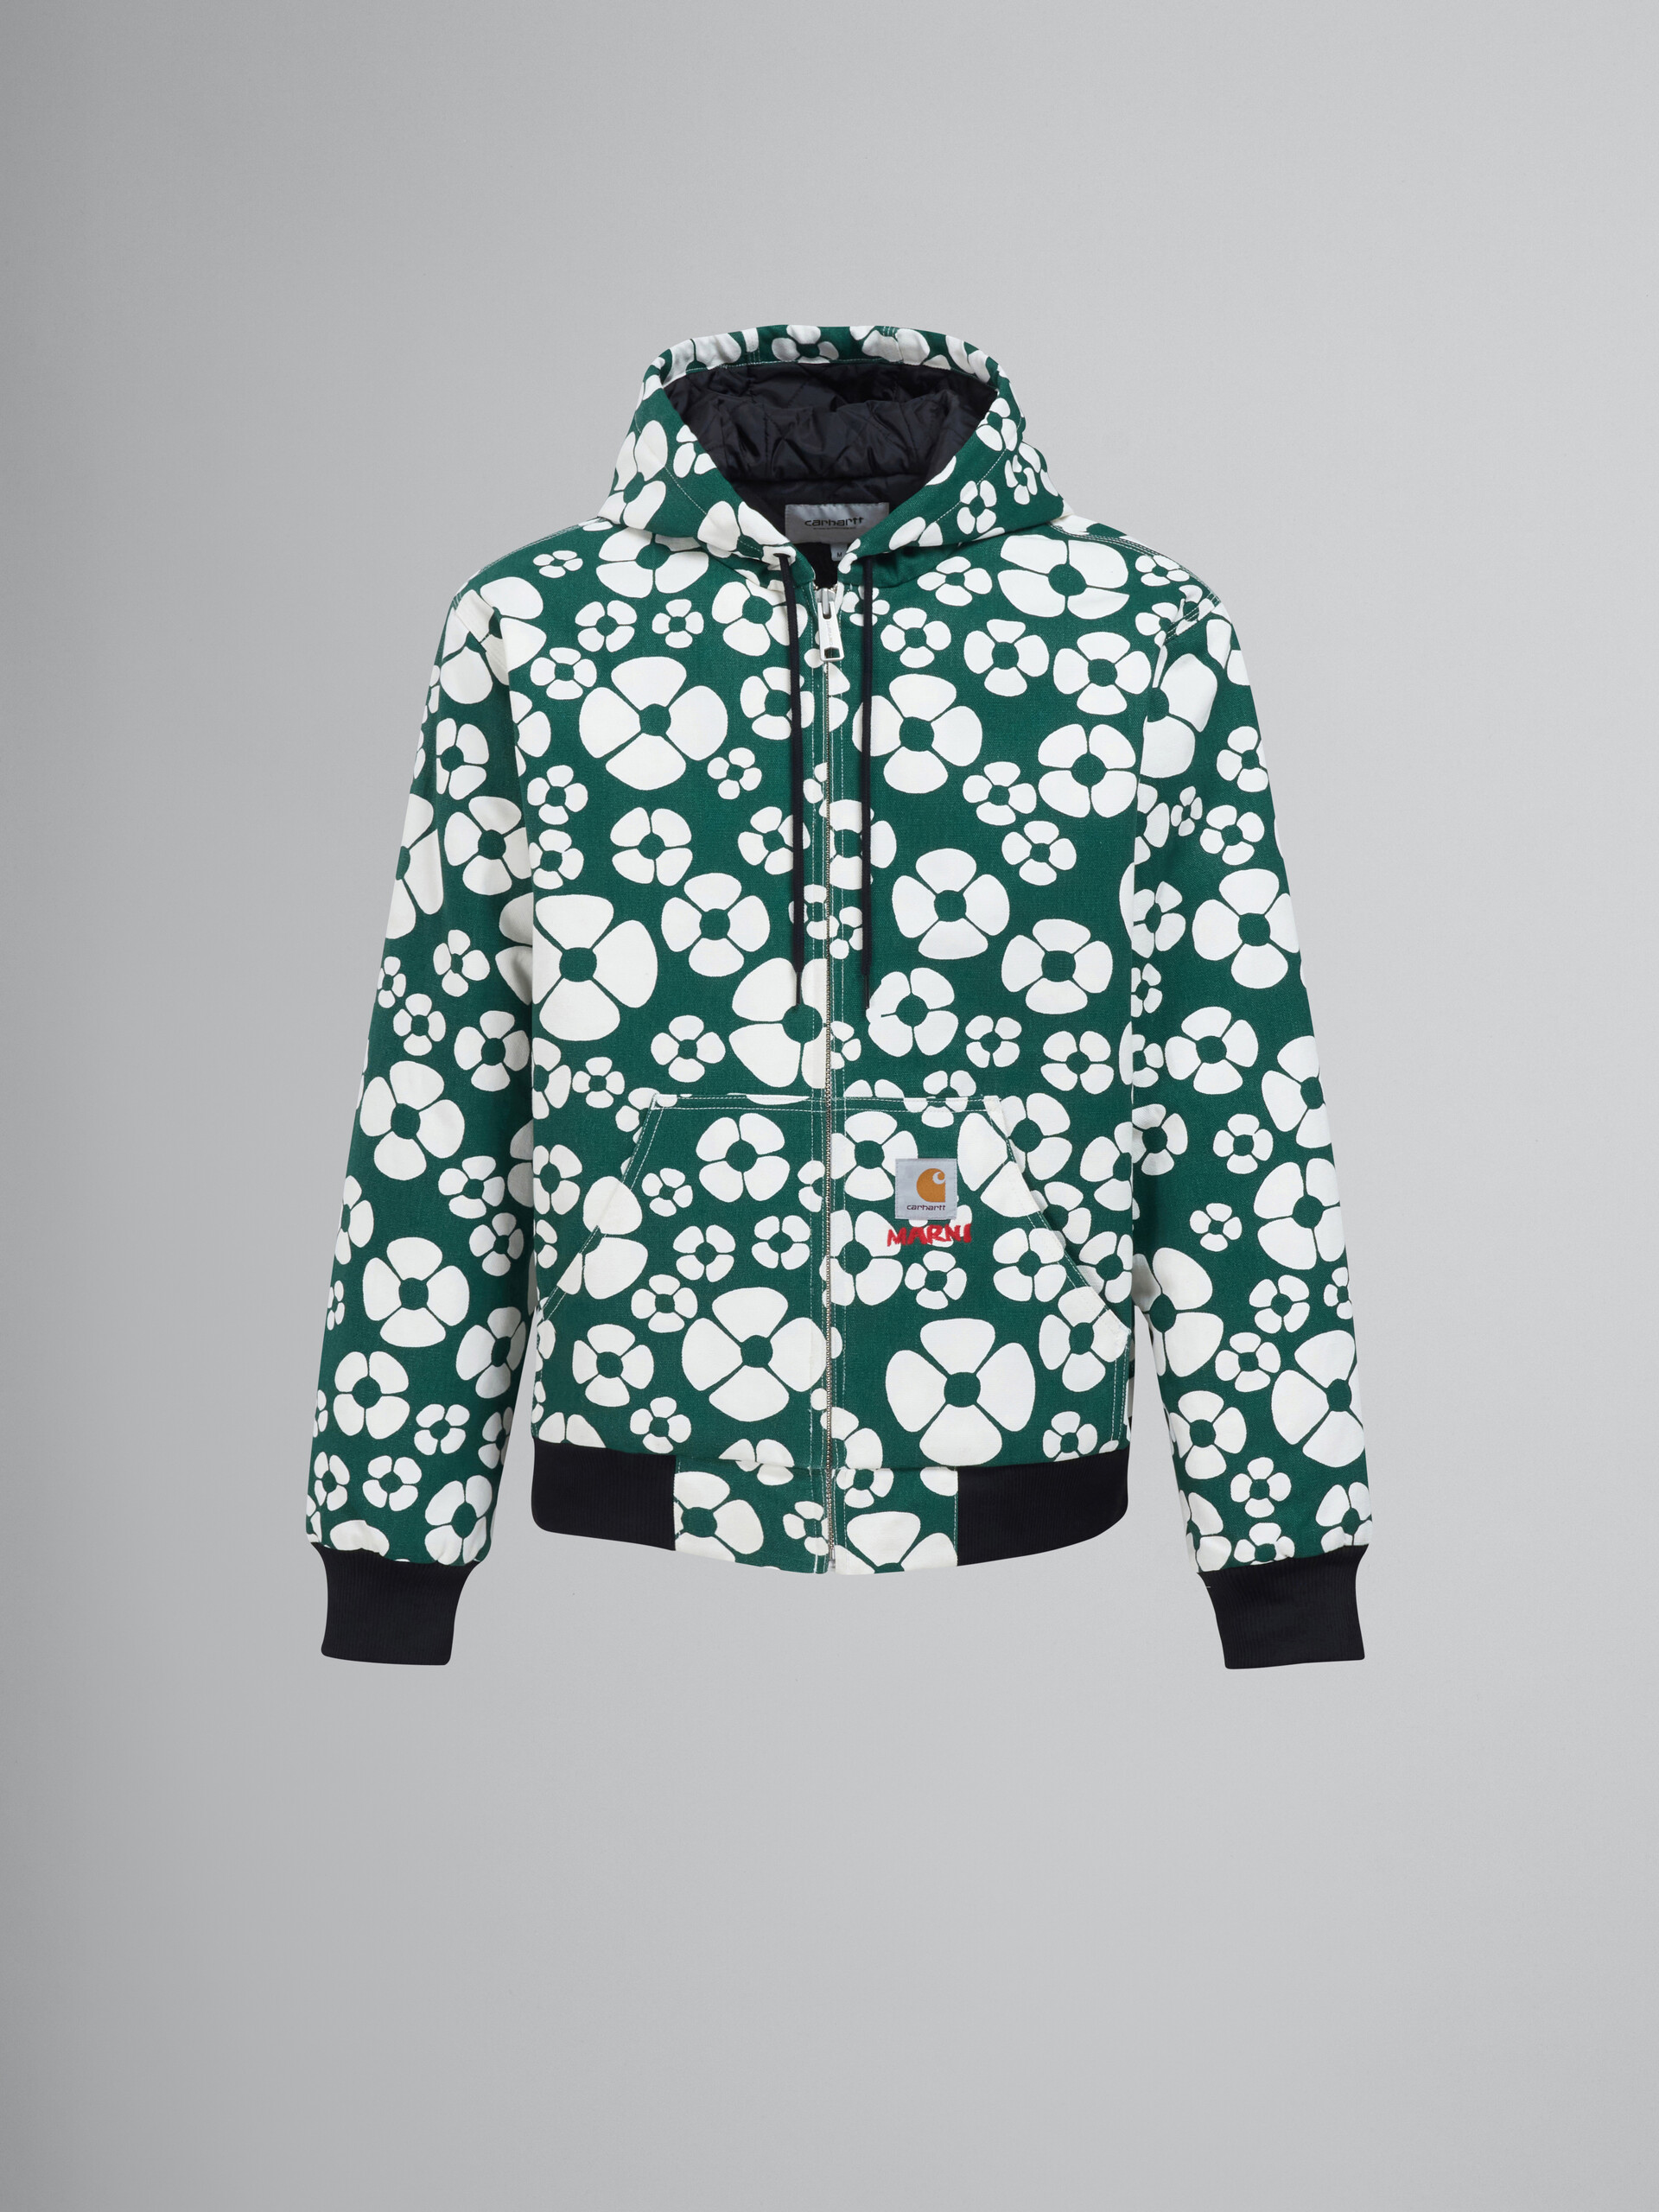 MARNI x CARHARTT WIP - green hooded jacket - Jackets - Image 1